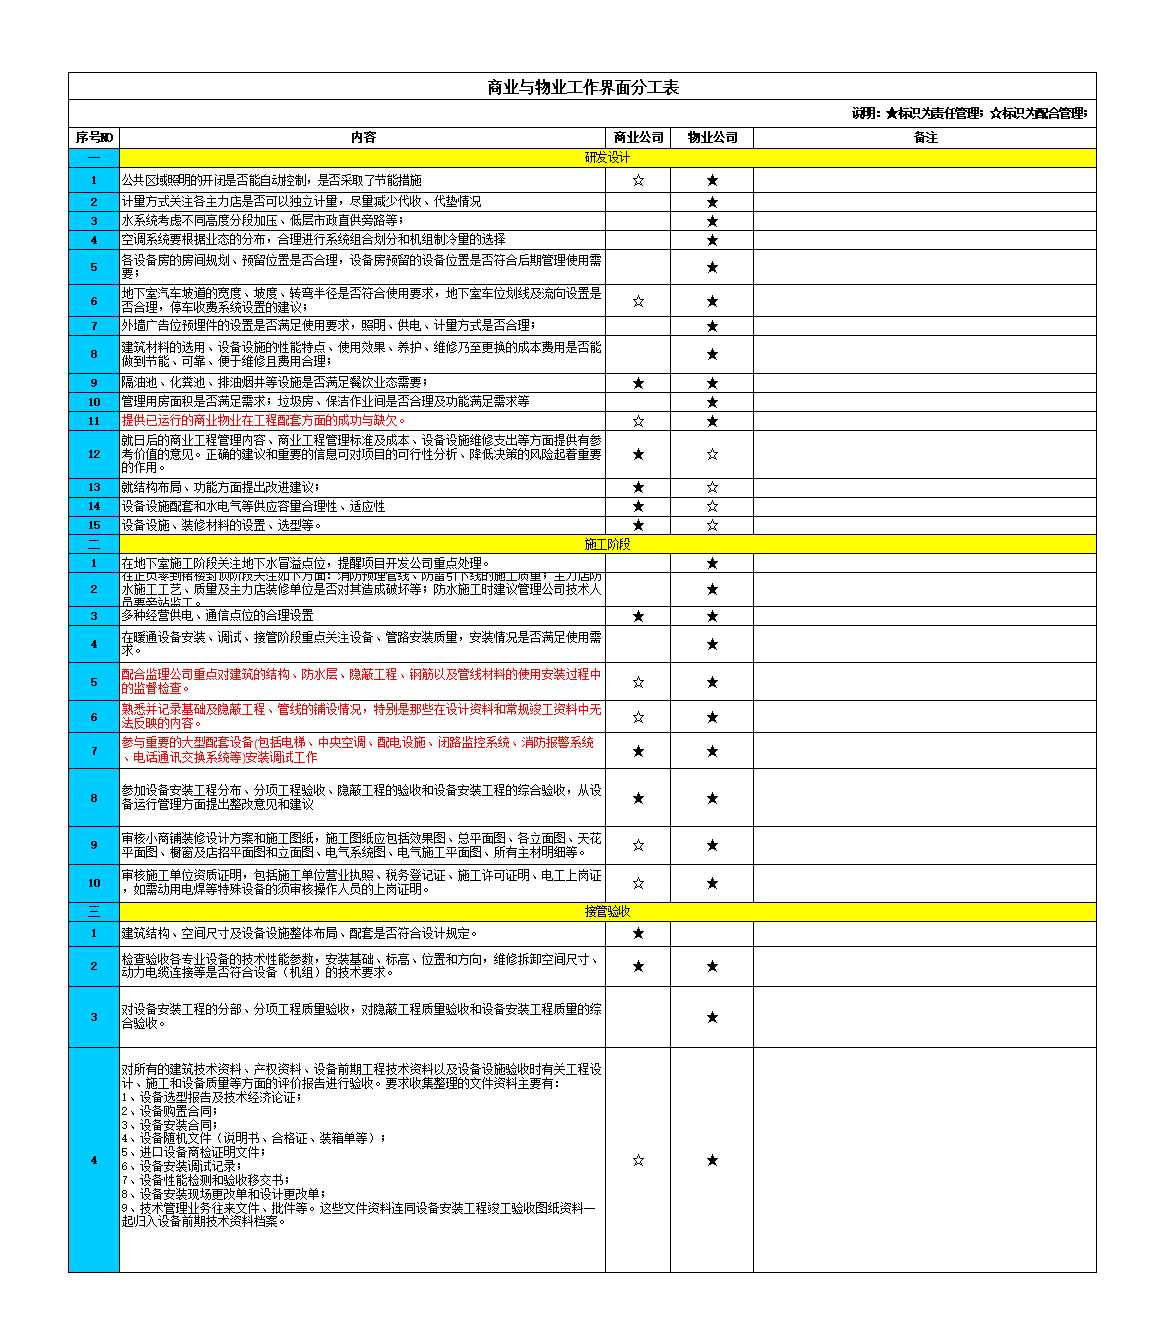 商业与物业工作界面分工表(调整后)Excel模板